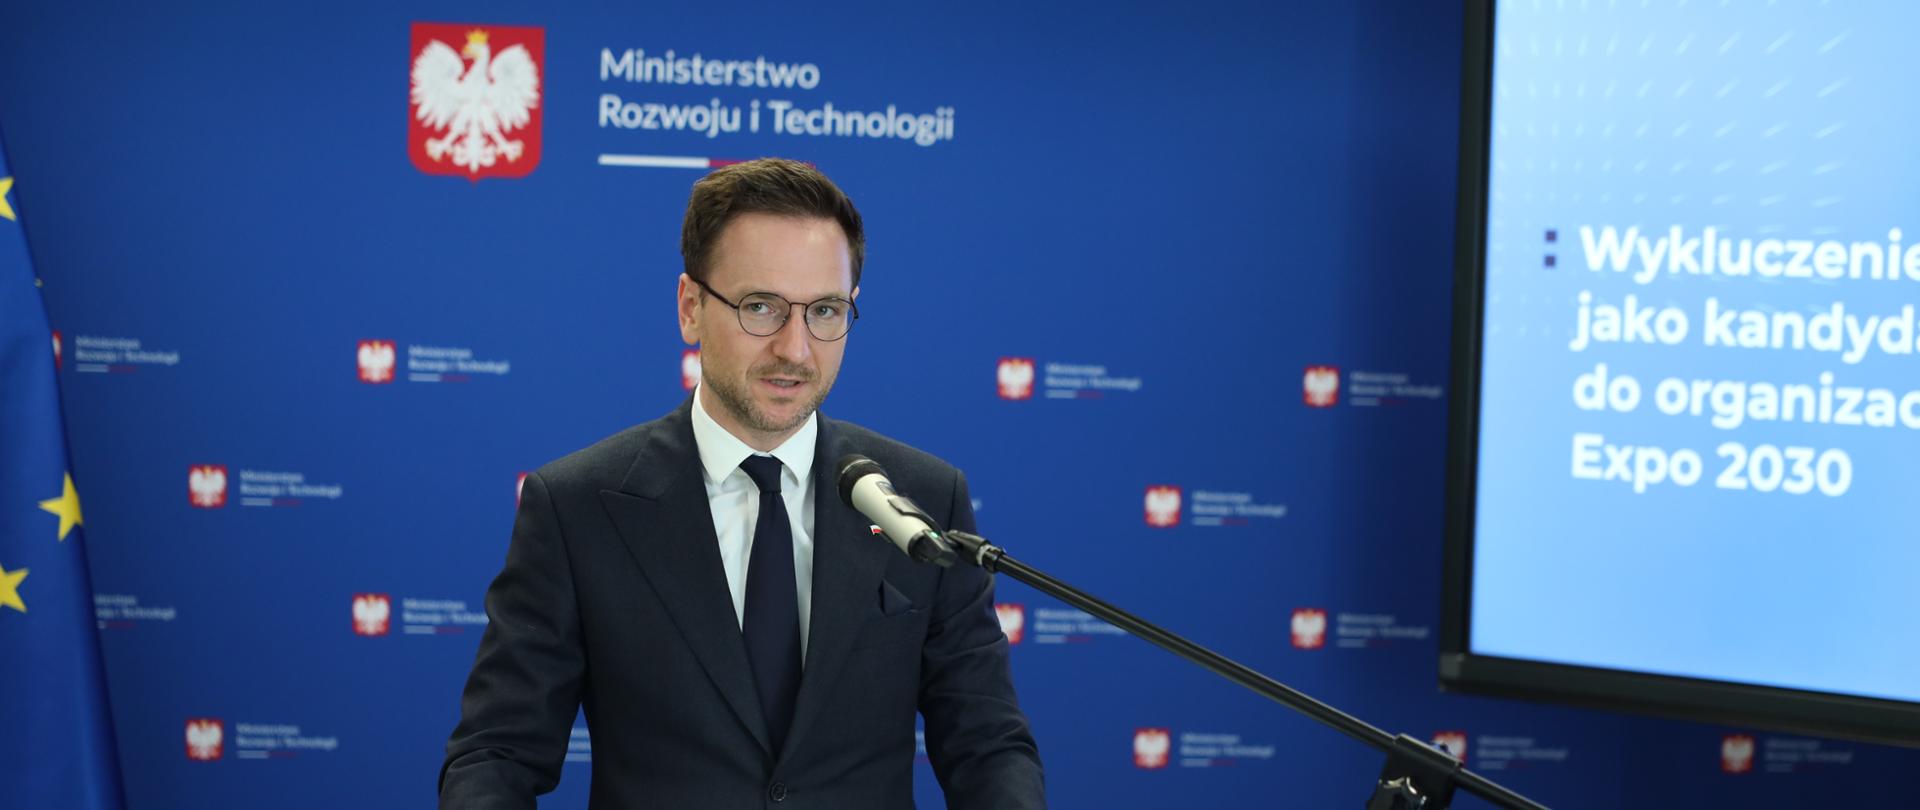 Minister Waldemar Buda stoi przy mównicy i przemawia. W tle ciemnoniebieska ścianka z logo ministerstwa.